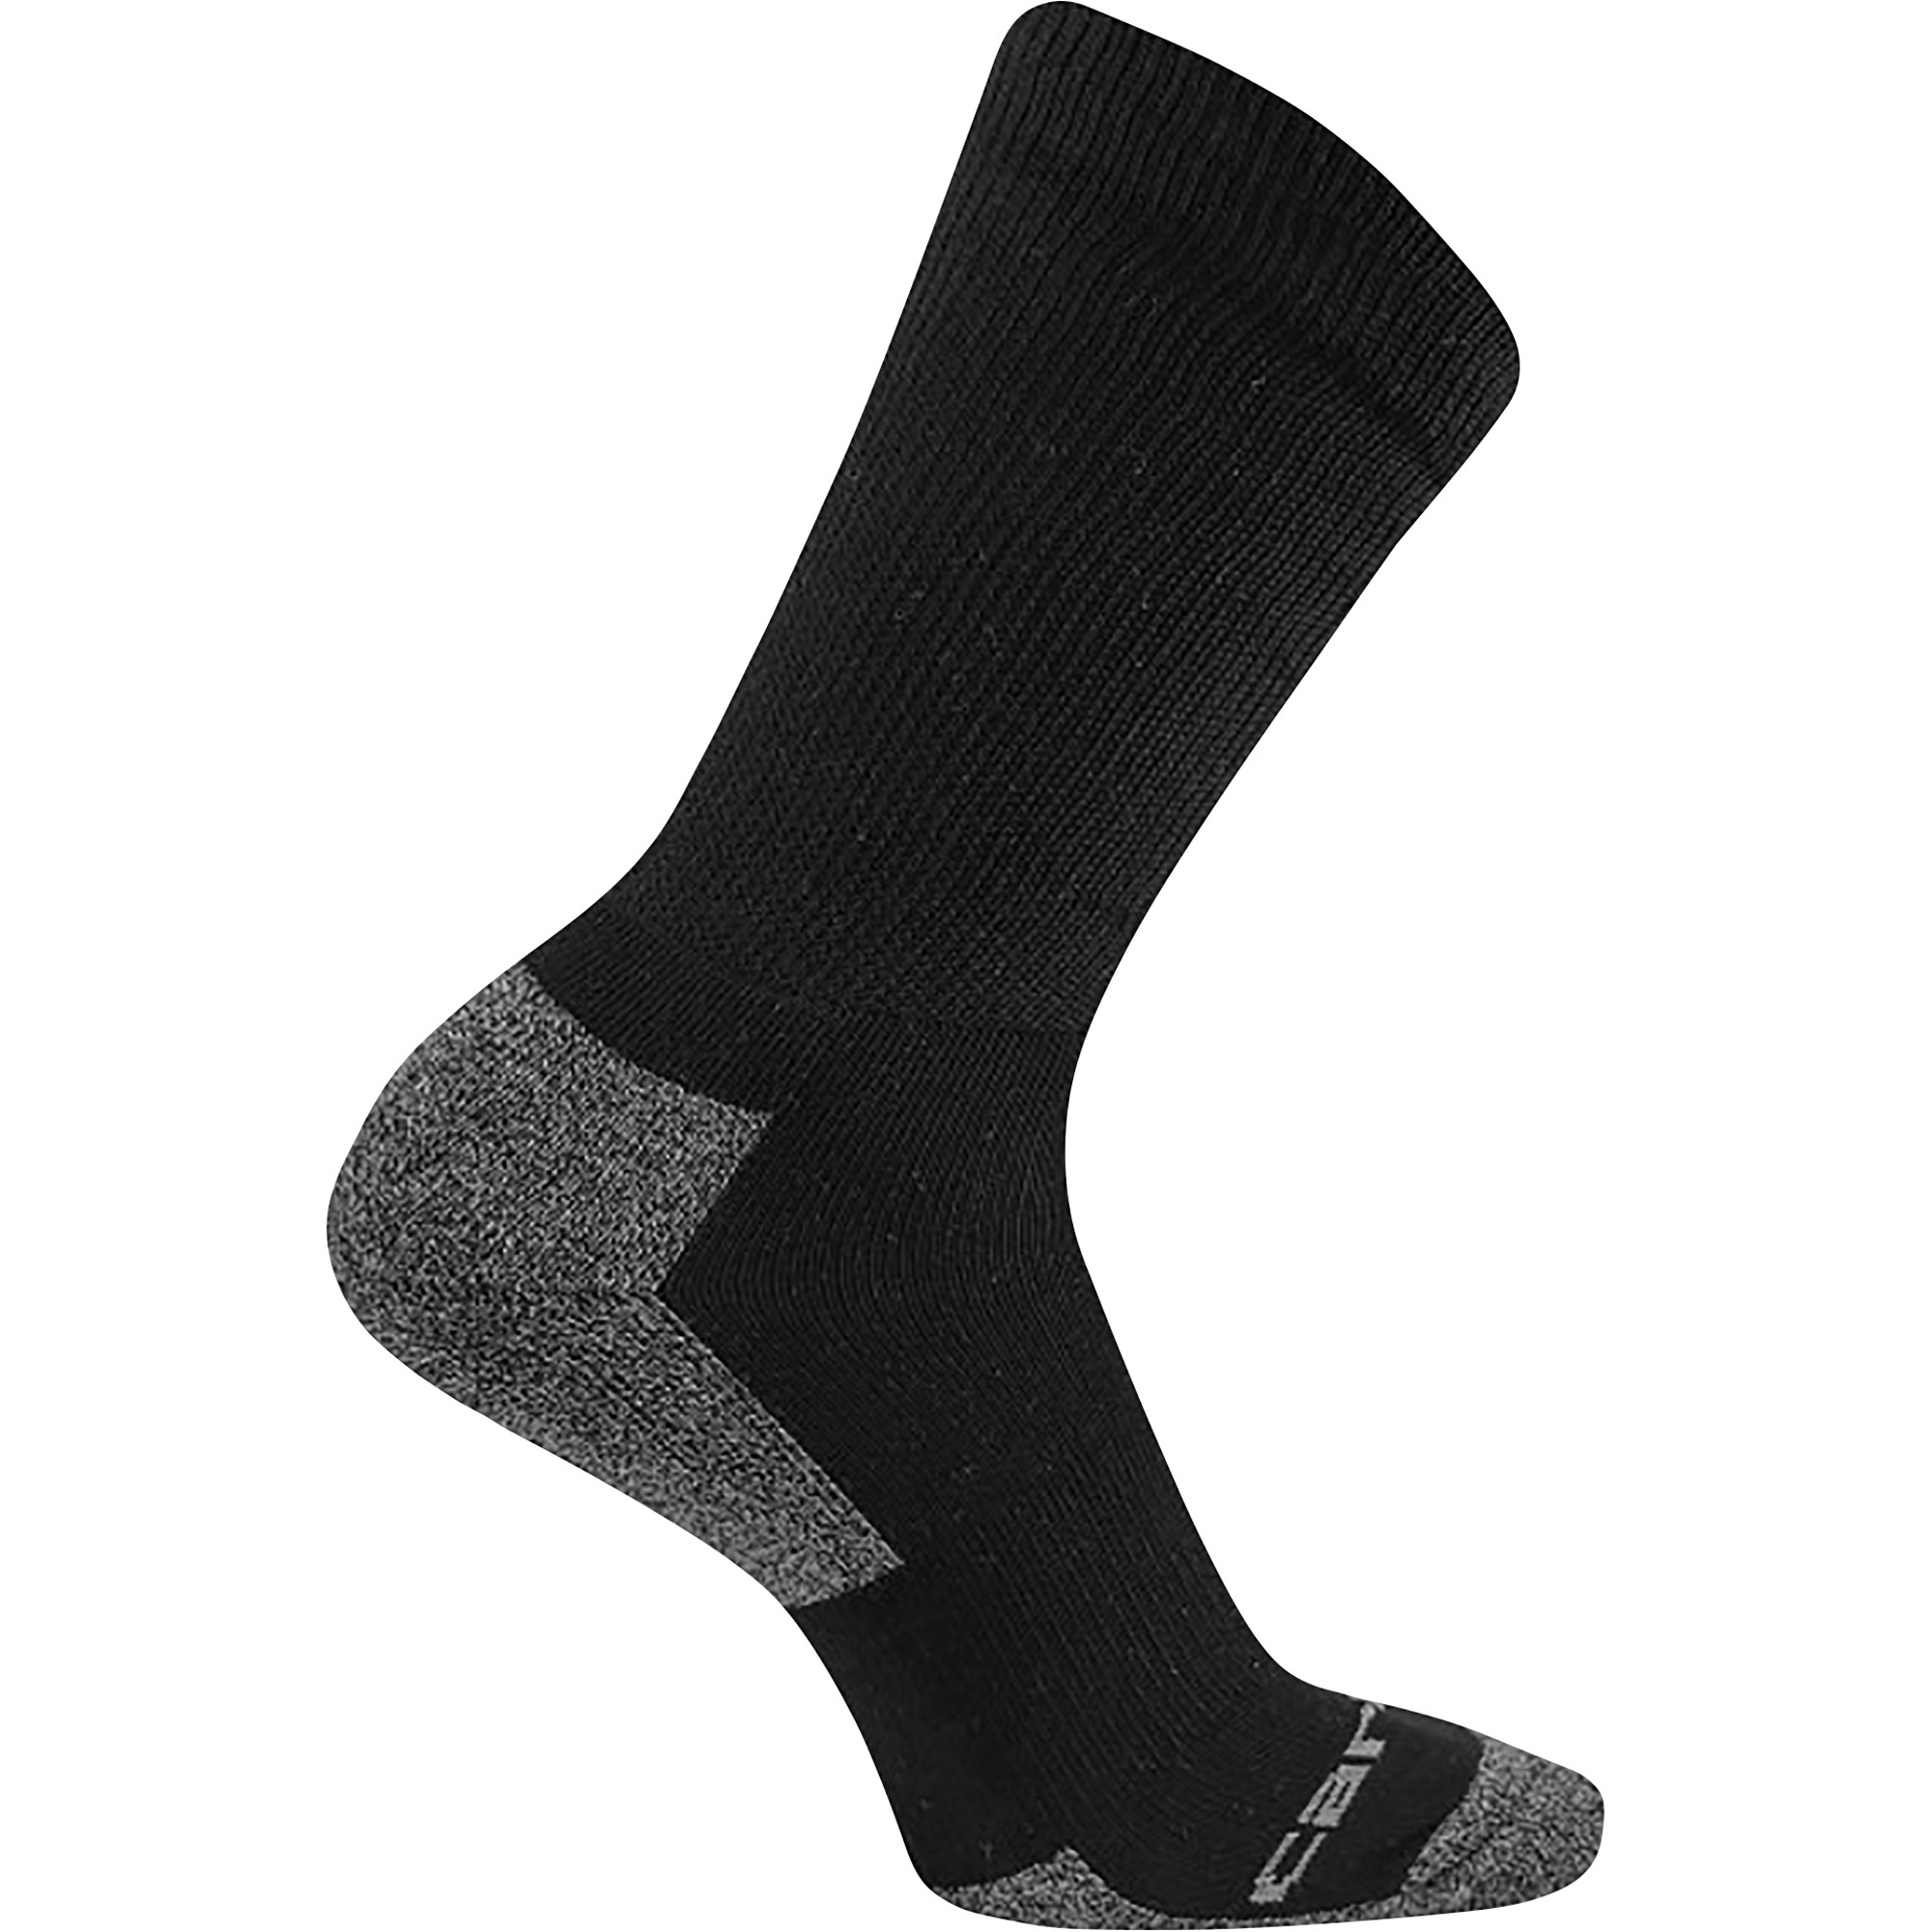 Carhartt Menâs Premium Comfort Stretch Crew Socks with FastDry Technology â 3 Pairs, Large, Black, Model A2213-3 BLACK LARGE